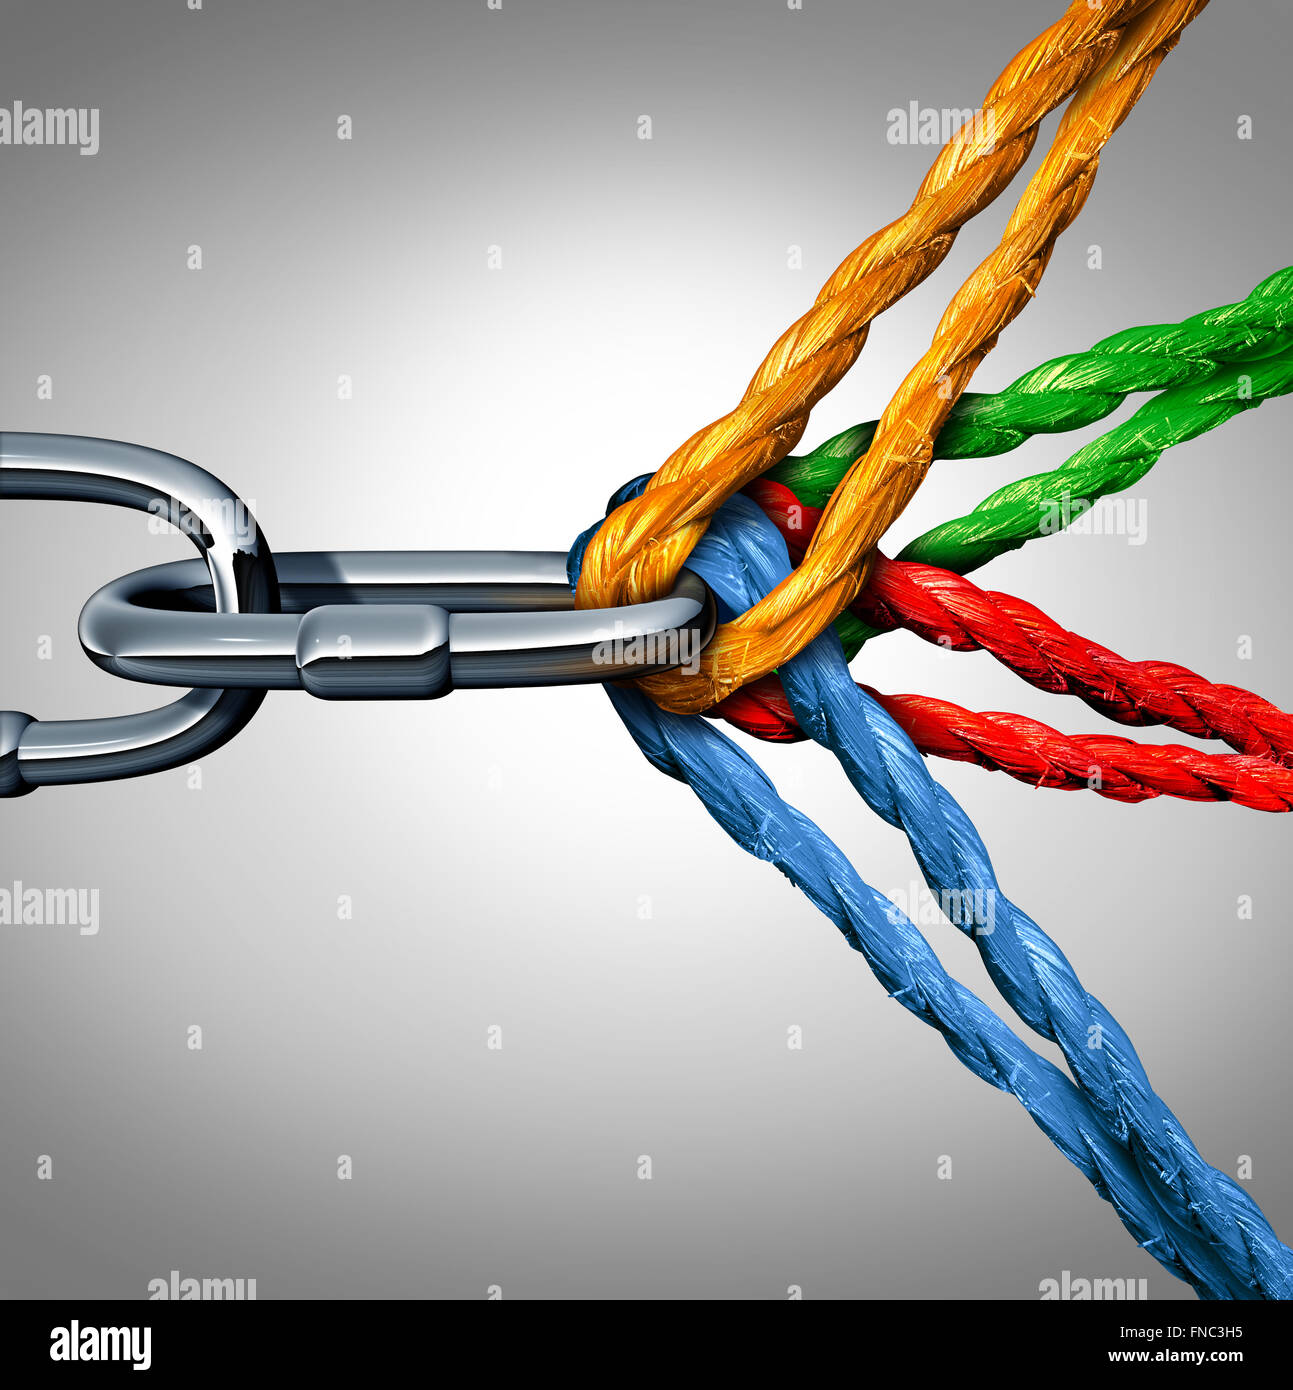 Concepto de conexión como un símbolo de grupo conectado con diferentes cuerdas atadas y vincula tirando de una cadena de metal como un vínculo indisoluble como una metáfora de la confianza y la fe de la comunidad. Foto de stock